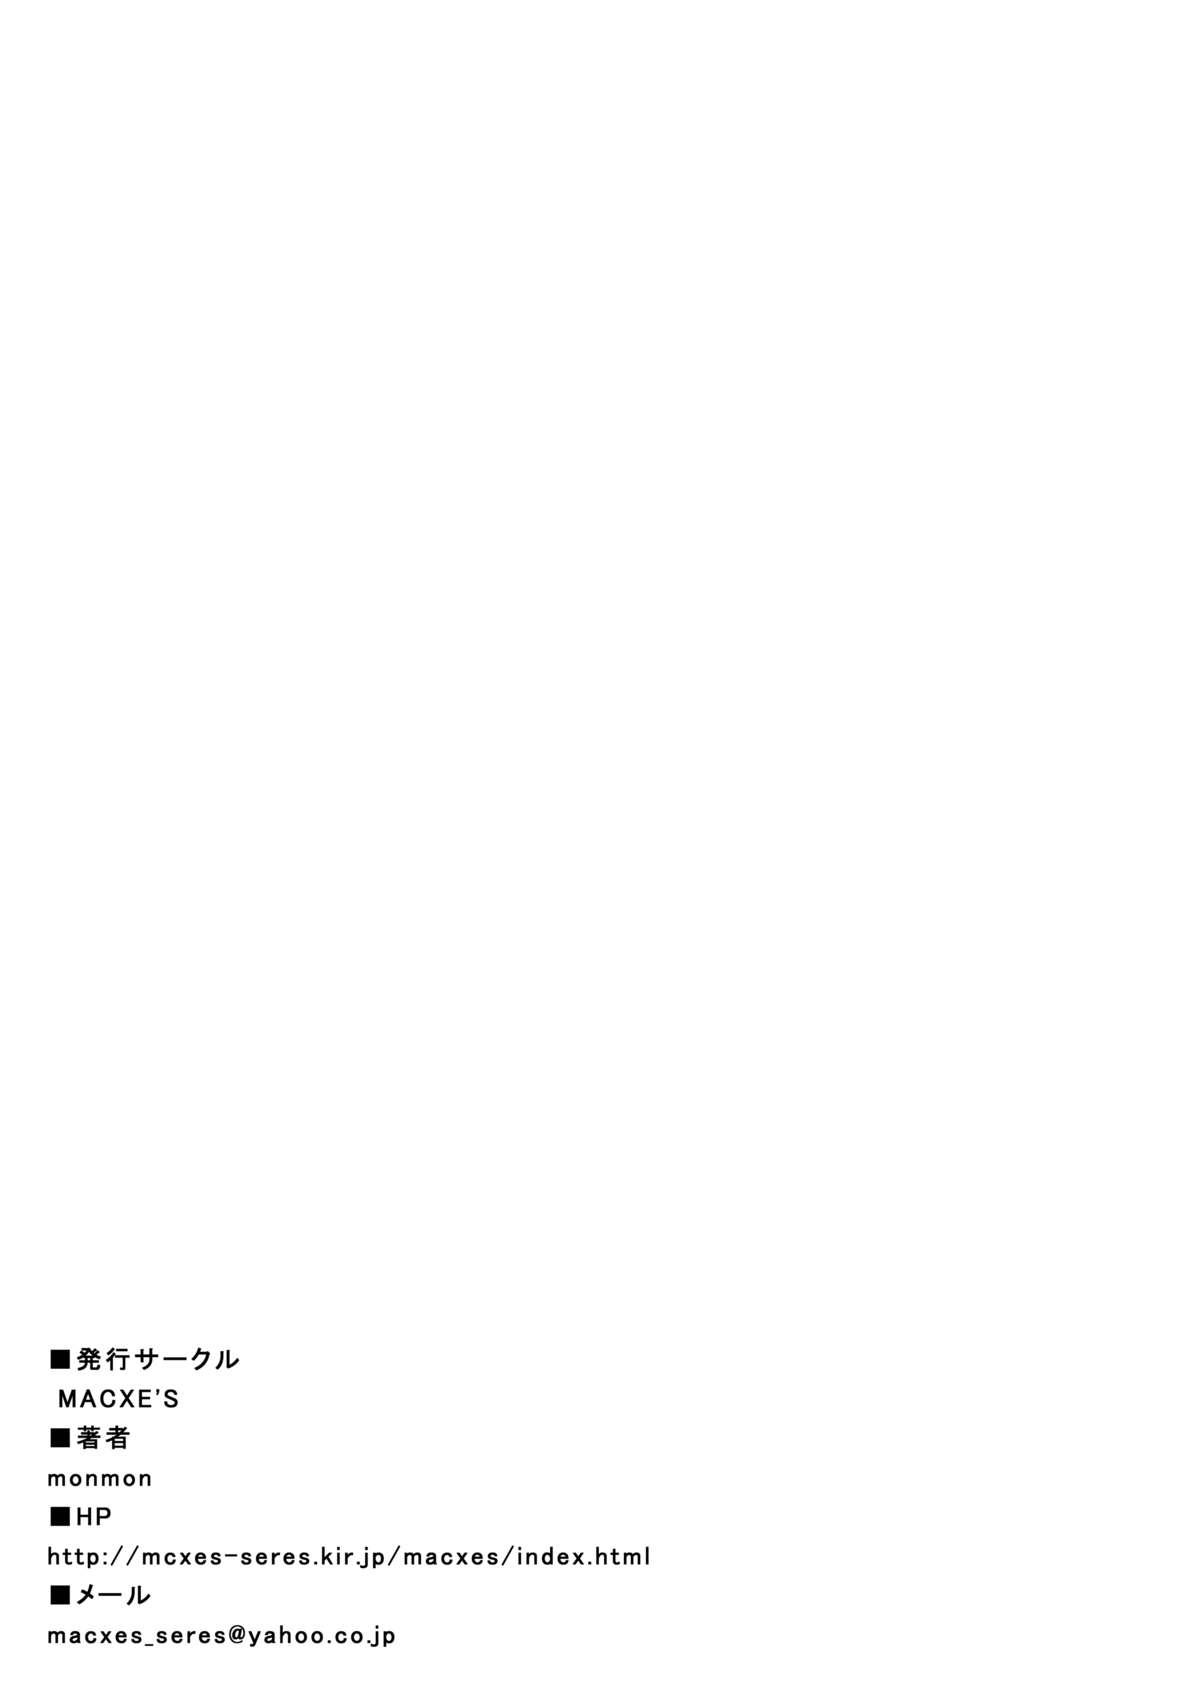 Amateur [MACXE'S (monmon)] Mou Hitotsu no Ketsumatsu ~Henshin Heroine Kairaku Sennou Yes!! Precure 5 Hen~ Daisanwa (Yes! Precure 5) - Yes precure 5 Free Amateur - Page 35